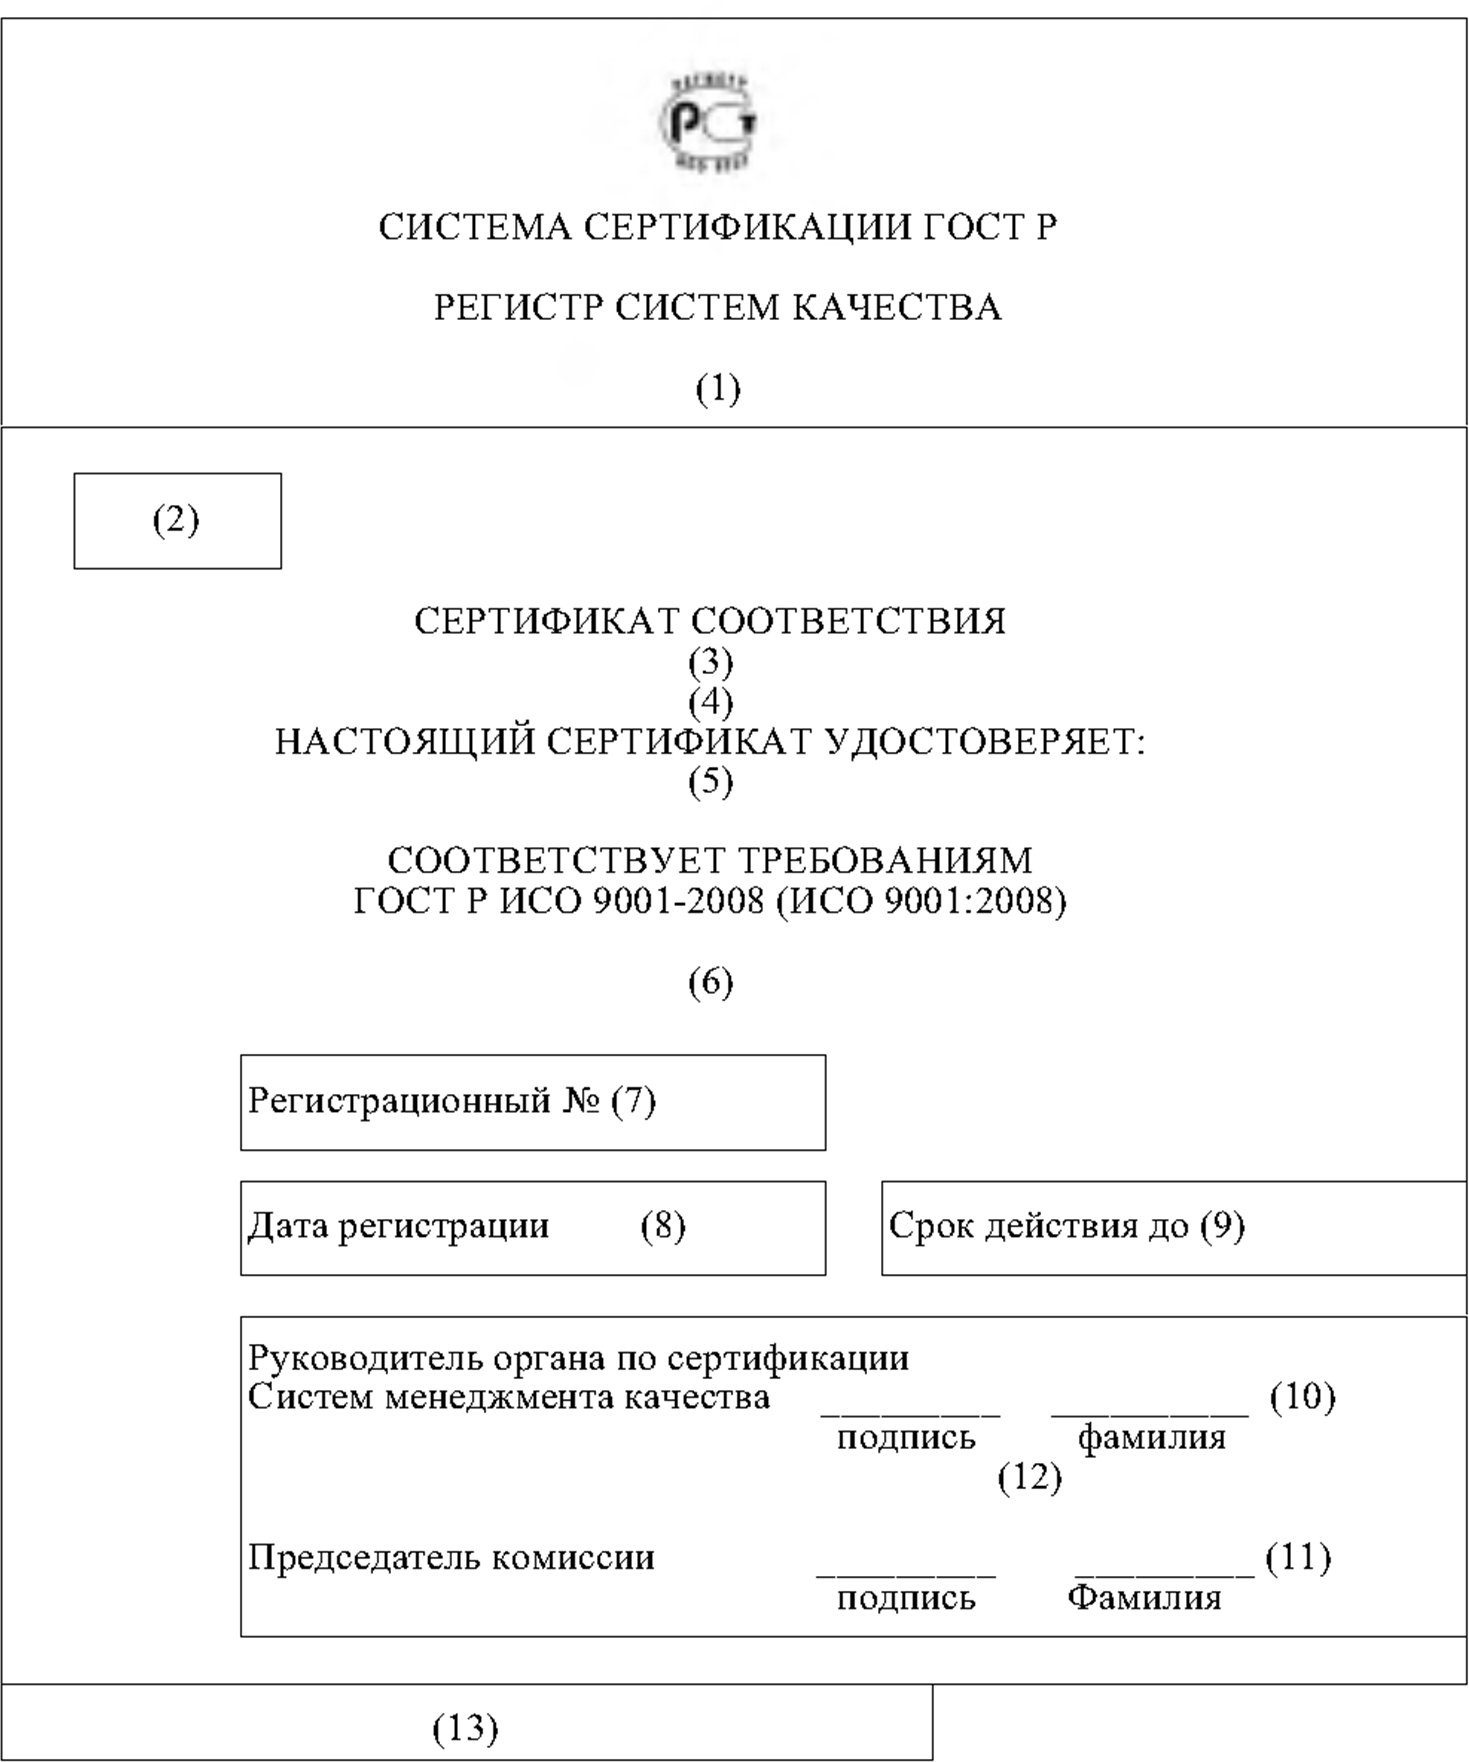 Реквизиты сертификата соответствия (на русском языке)